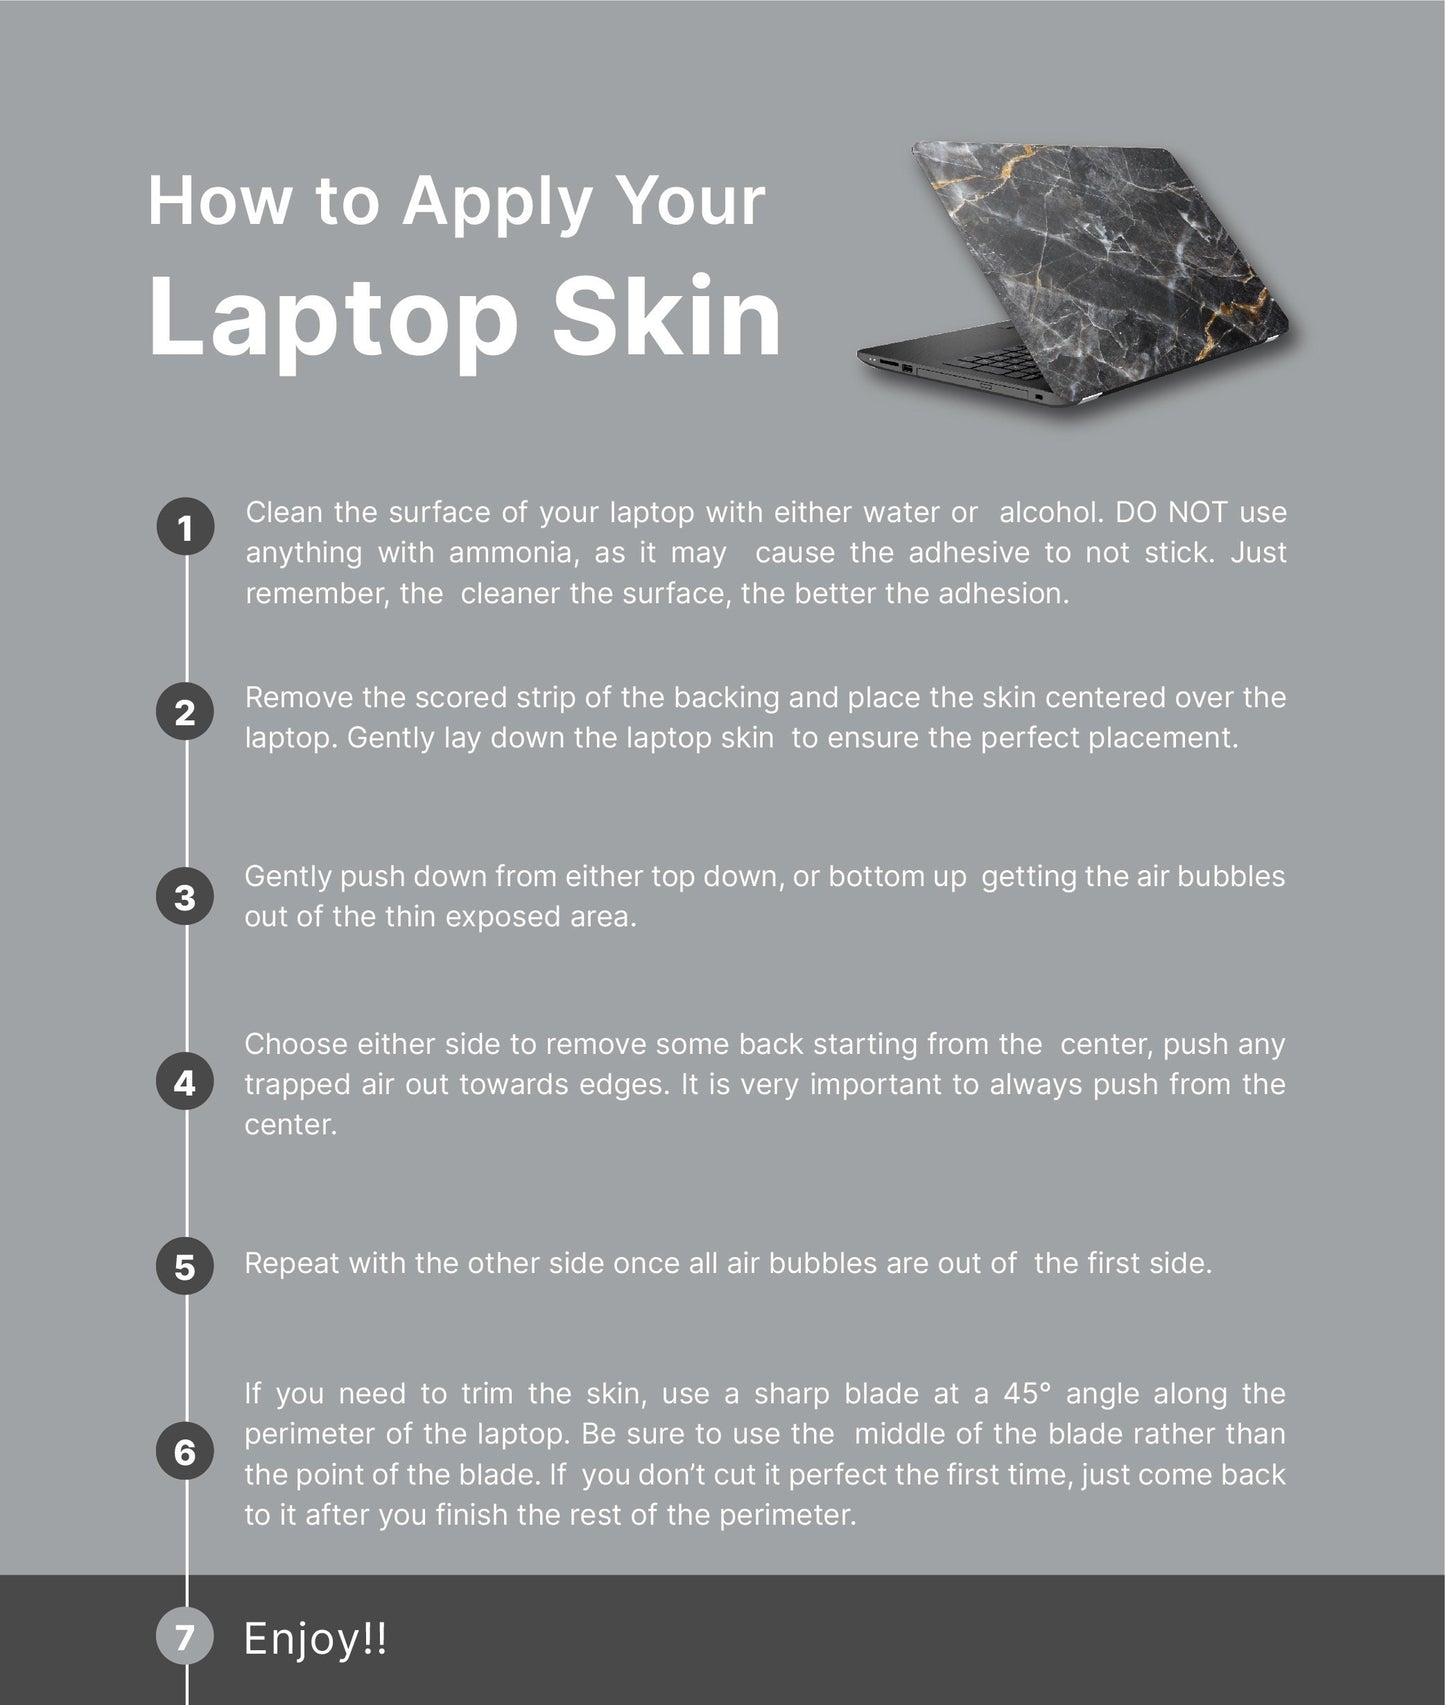 Boho Sun Laptop Skin, Laptop Cover, Laptop Skins, Removable Laptop Skins, Laptop Decal, Customized Laptop Skin, Laptop Stickers 224